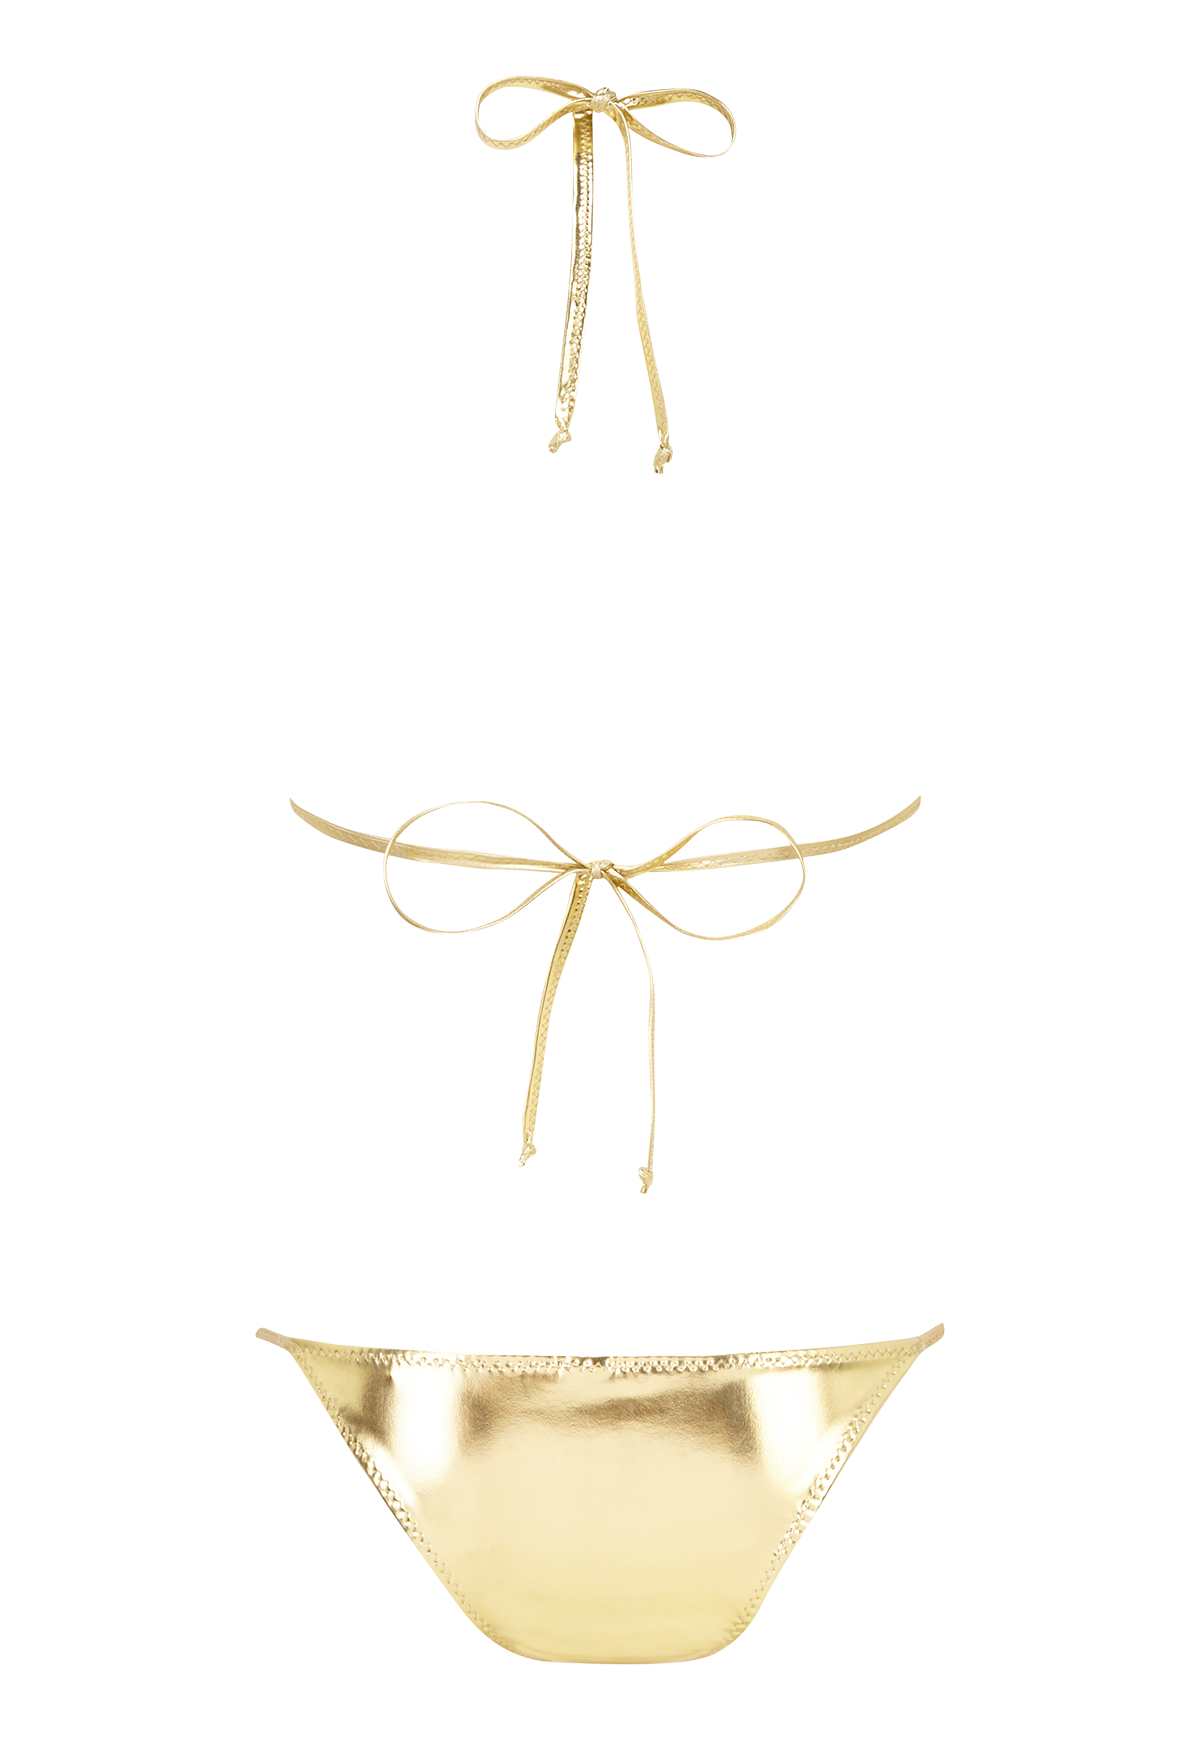 THE PAMELA STRING BIKINI in SOFT GOLD PVC